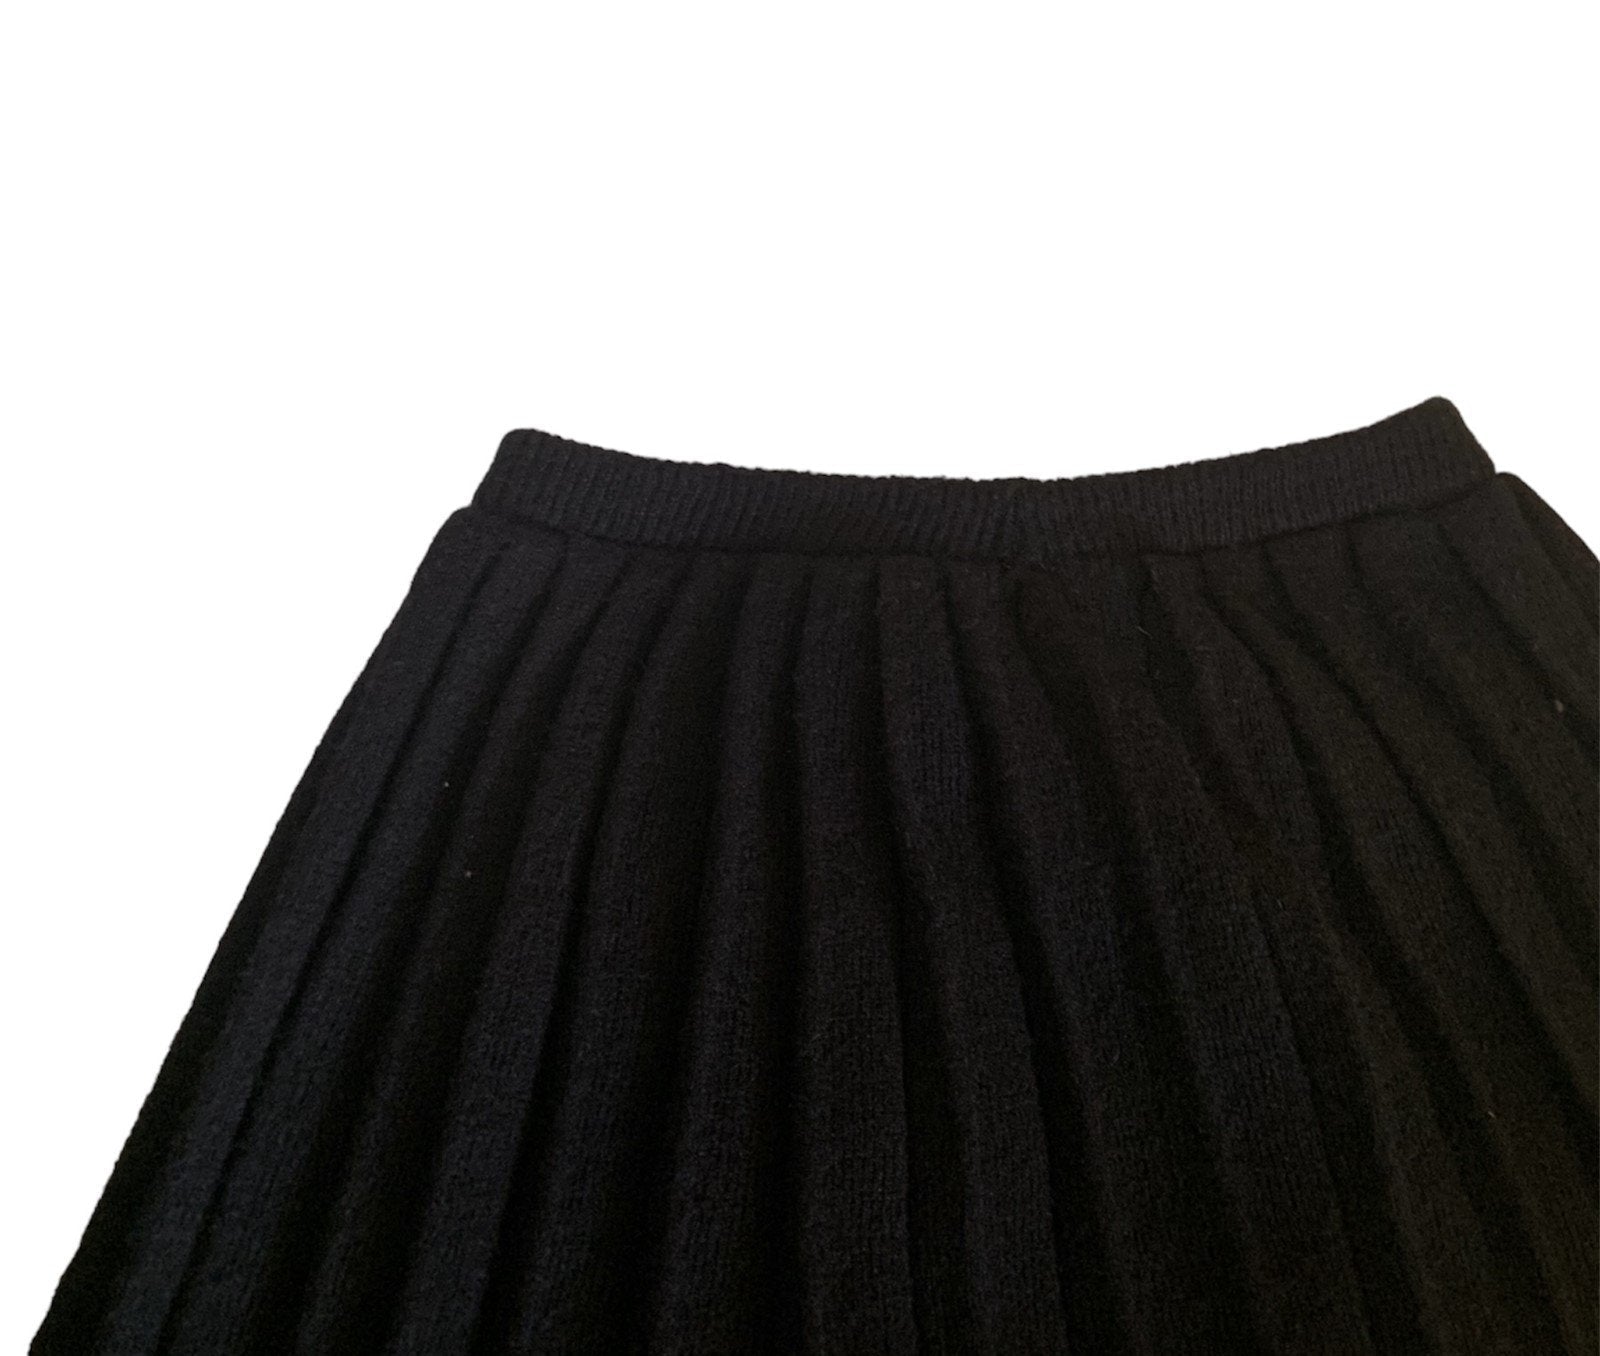 Vintage Wool Pleated Black Midi Skirt Elastic Waist Women's Clothing